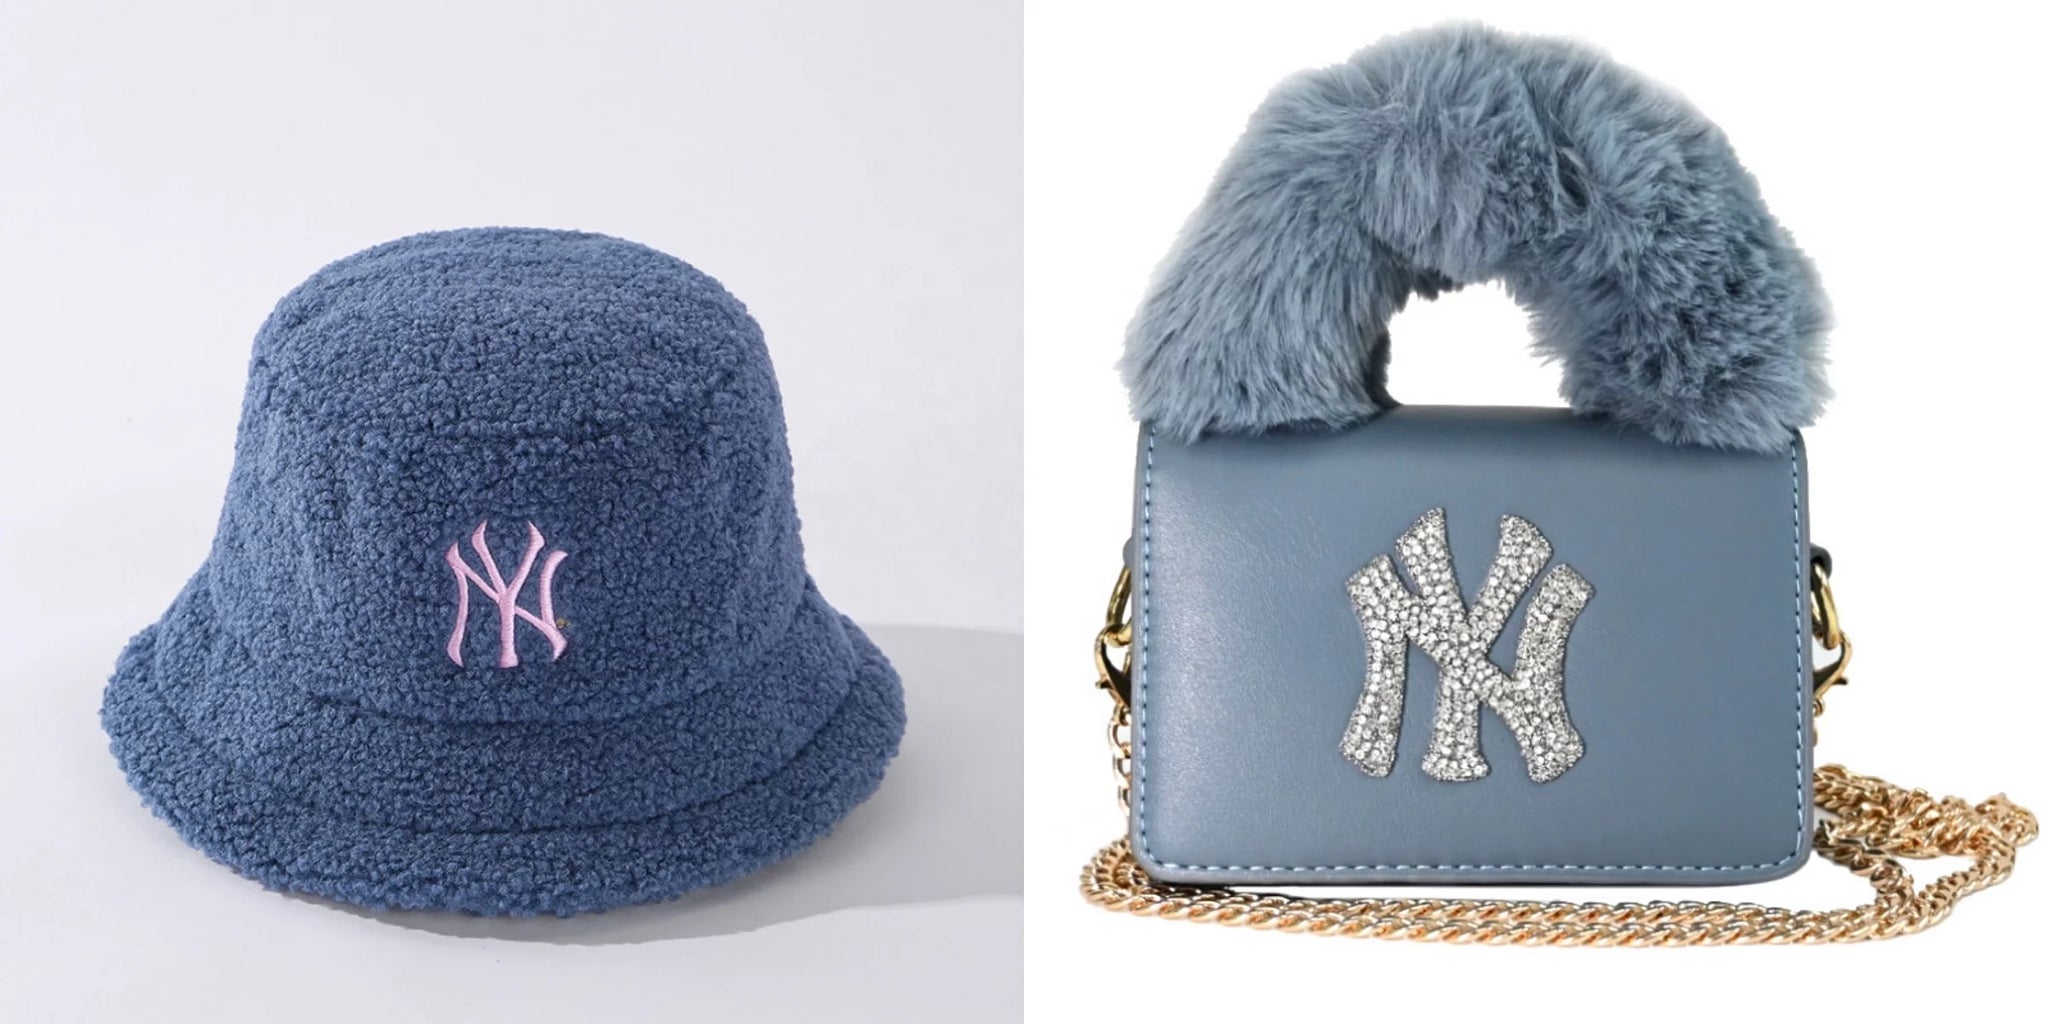 Retro style fuzzy ny New York handbag with s fuzzy matching